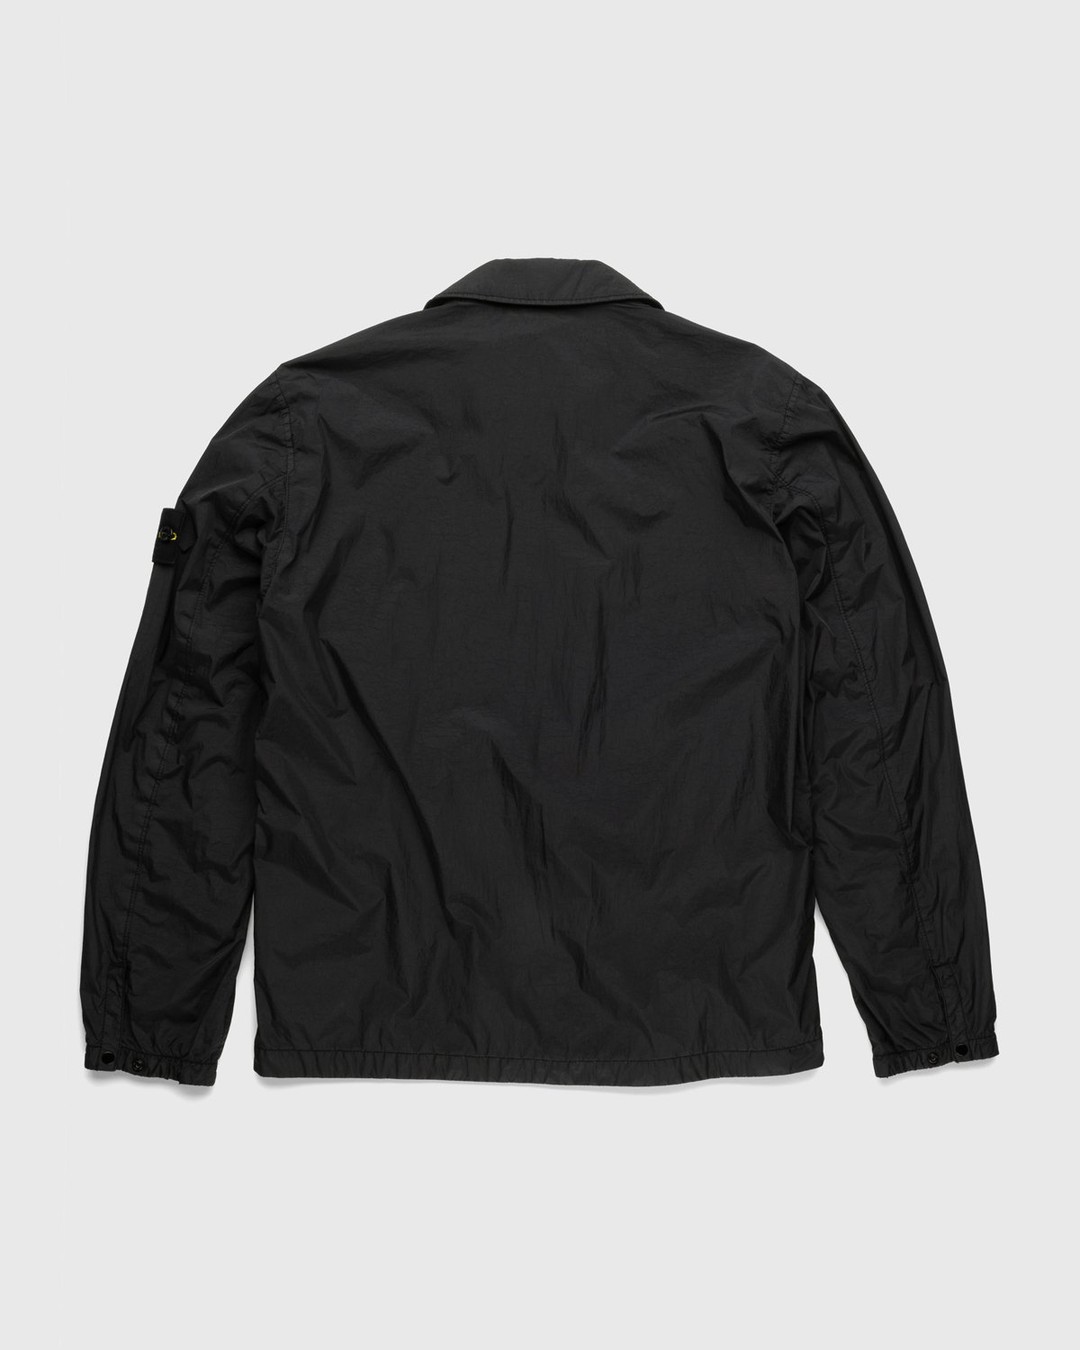 Stone Island – Overshirt Black - Outerwear - Black - Image 2